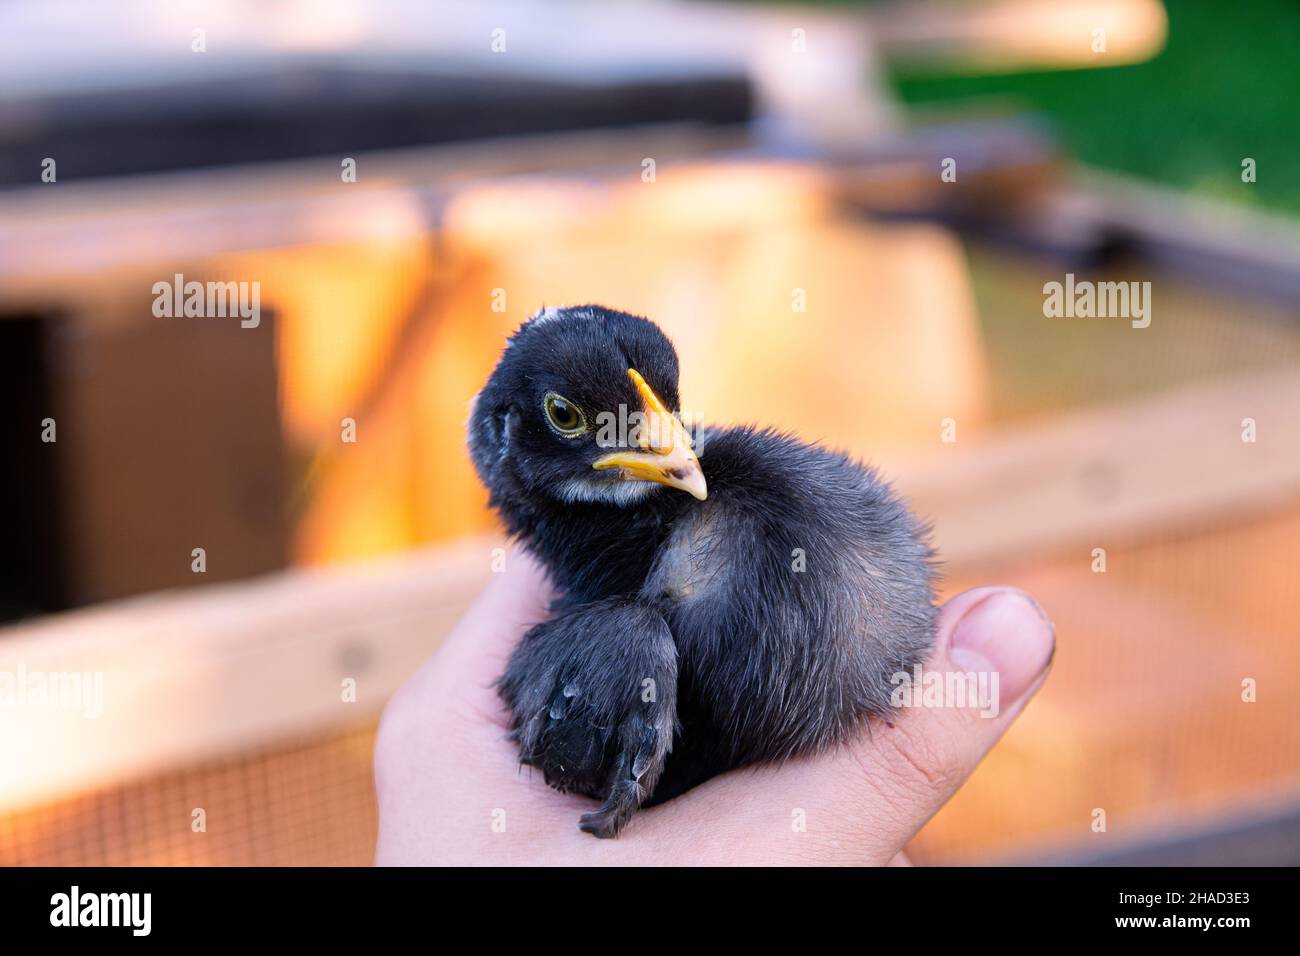 Un petit poulet noir est assis dans la main. Photo d'un petit gros plan de poulet. Banque D'Images